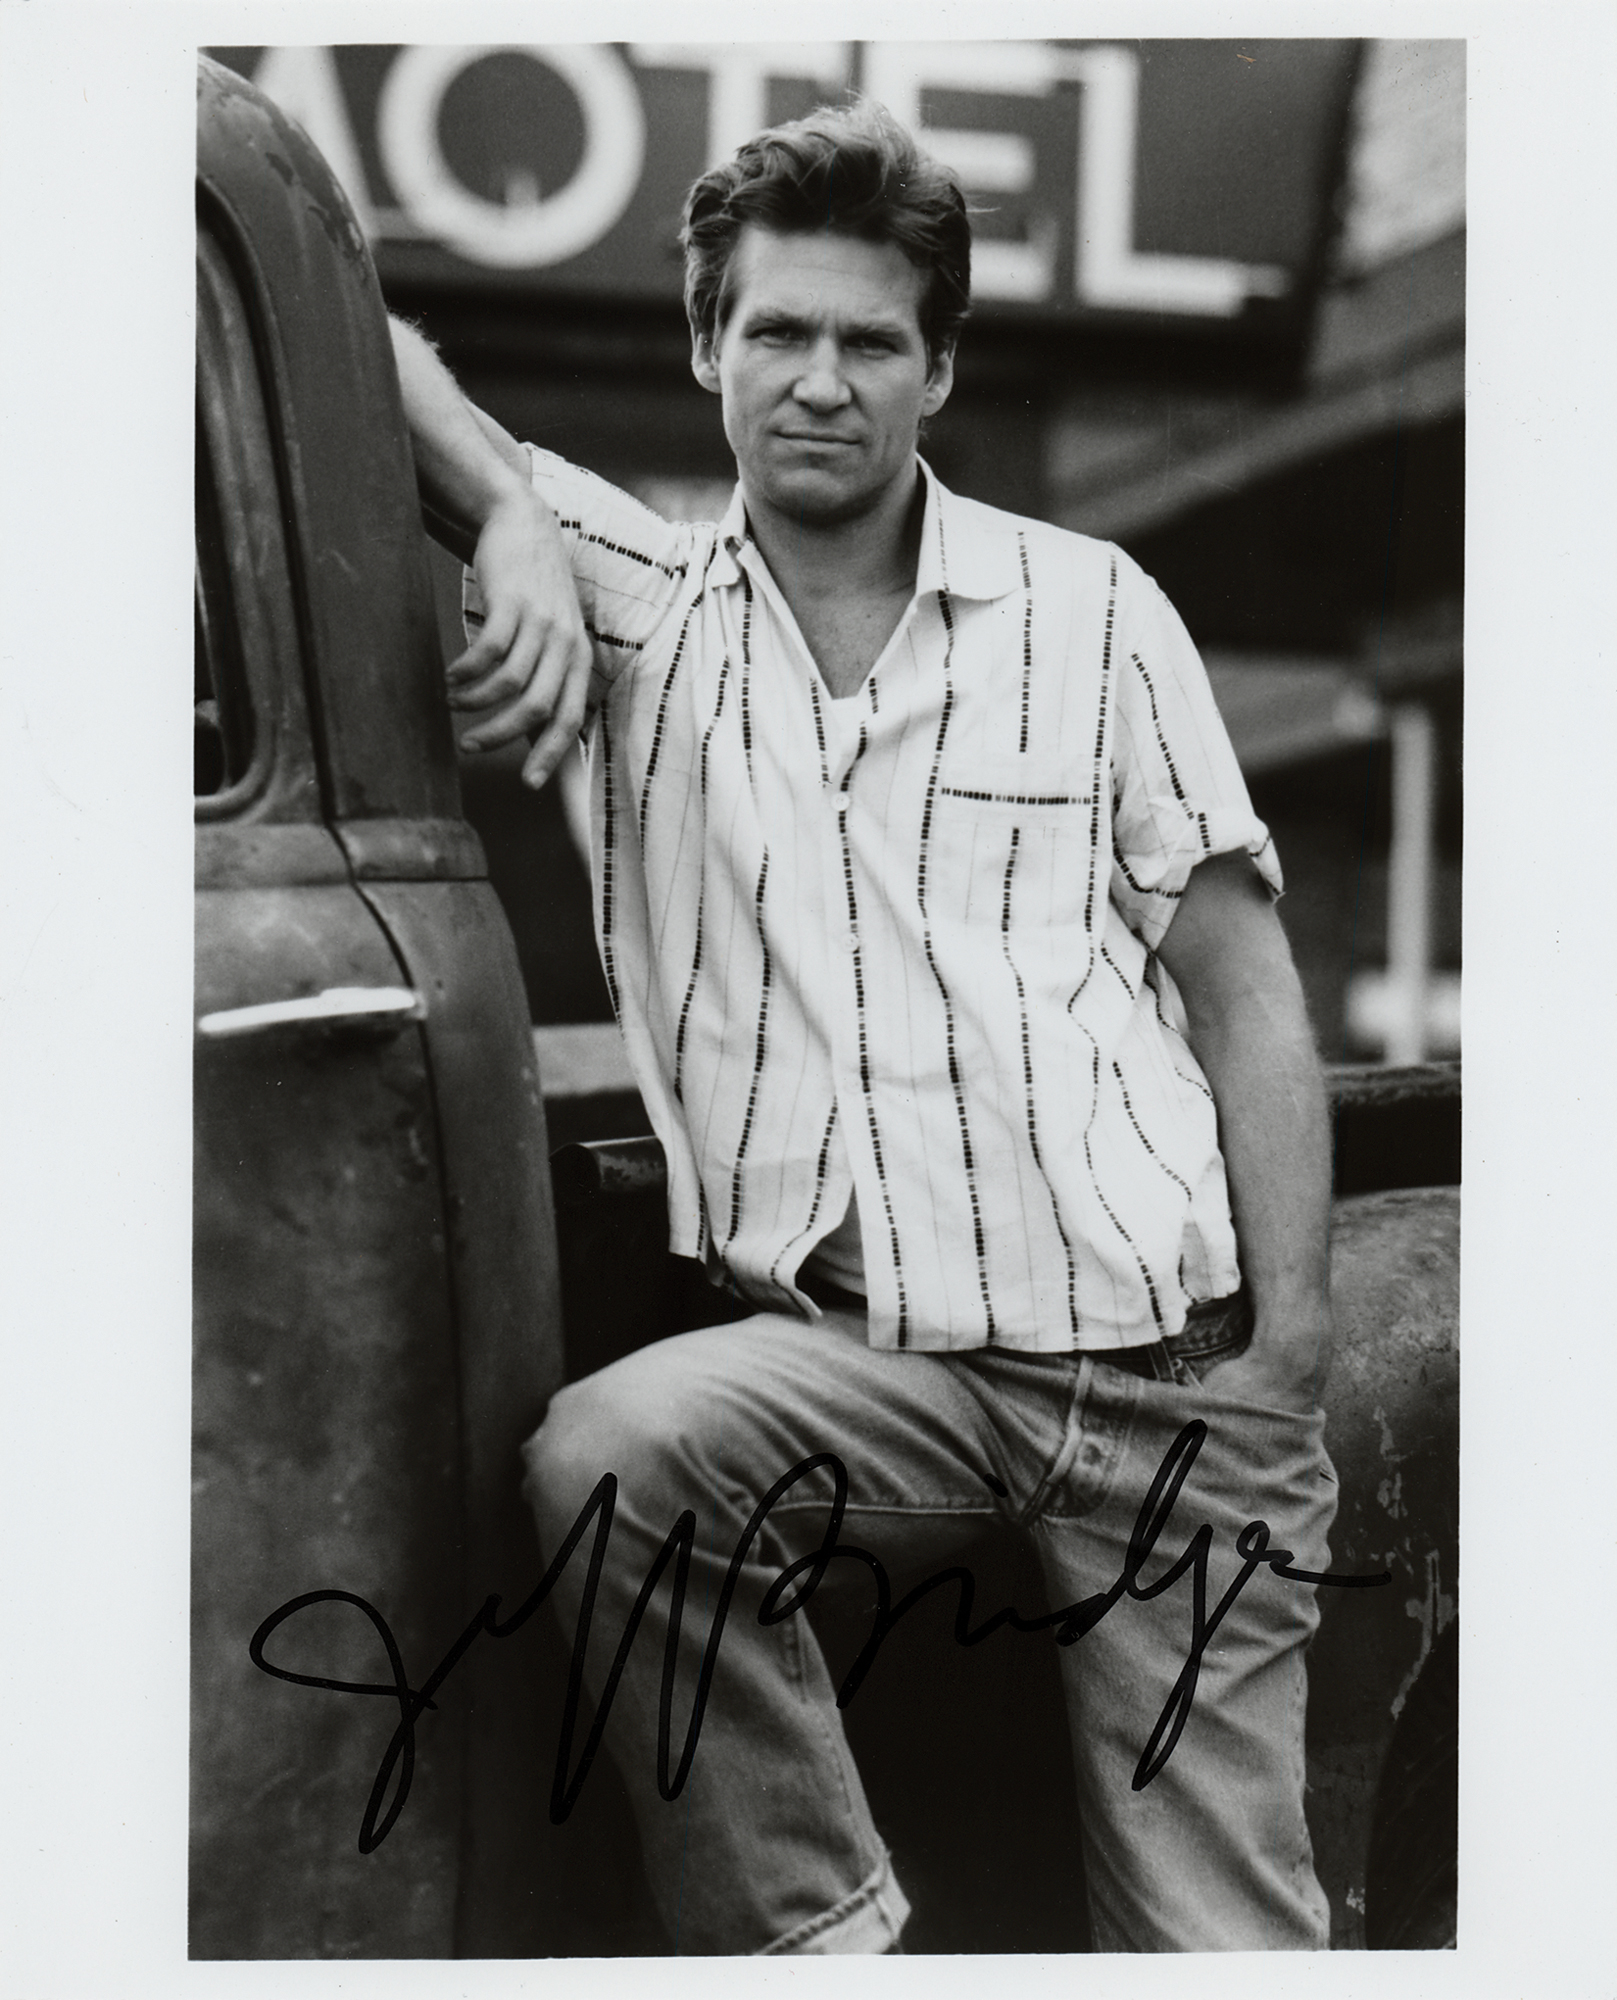 Lot #539 Jeff Bridges Signed Photograph